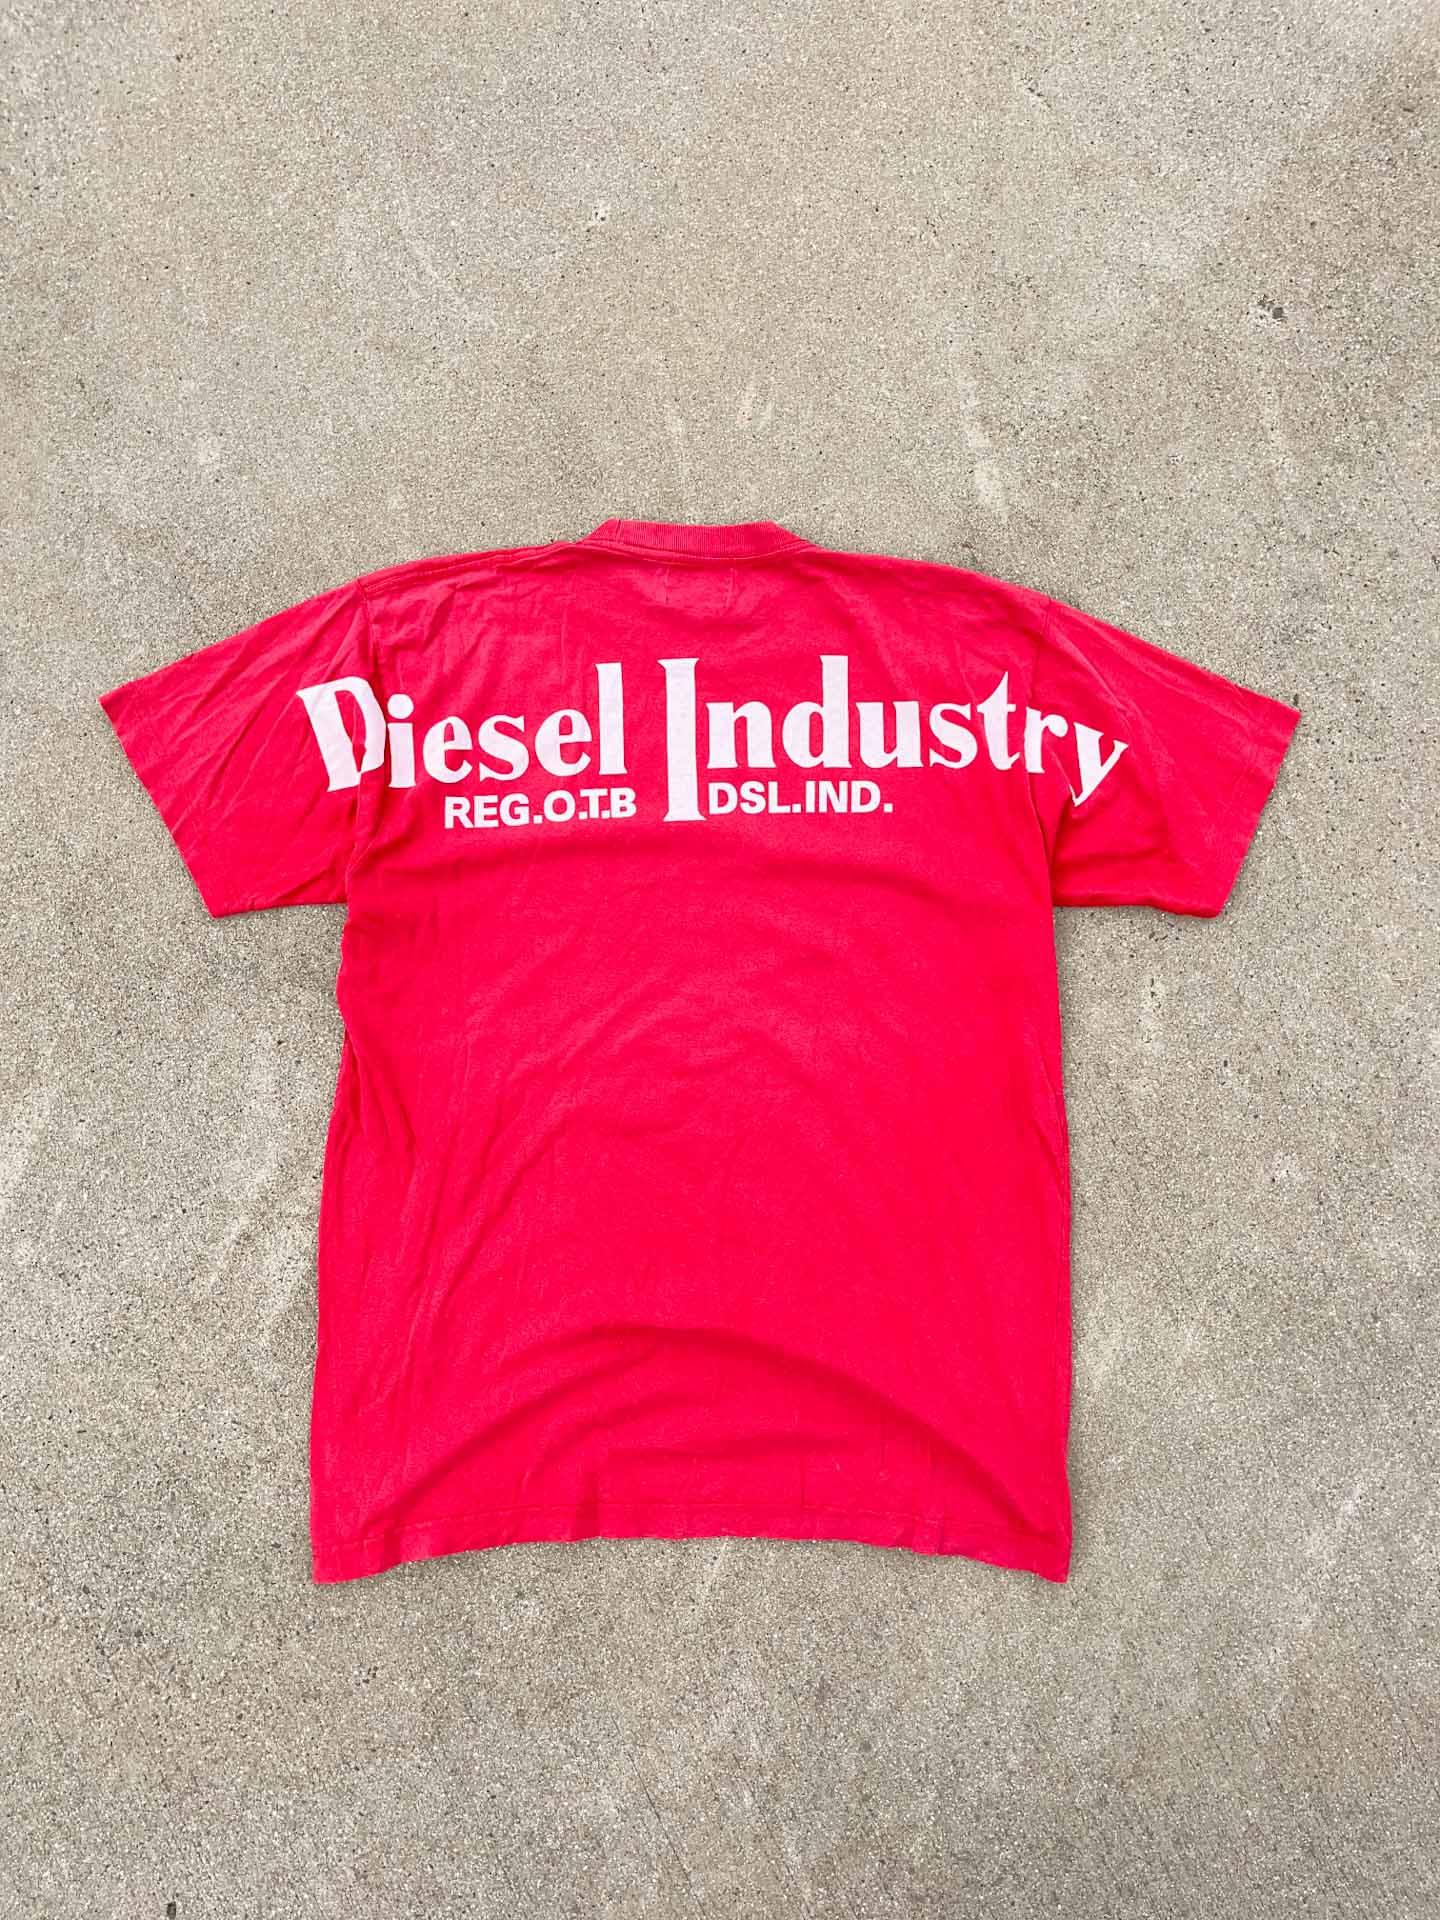 Diesel 1955 Industry - secondvintage